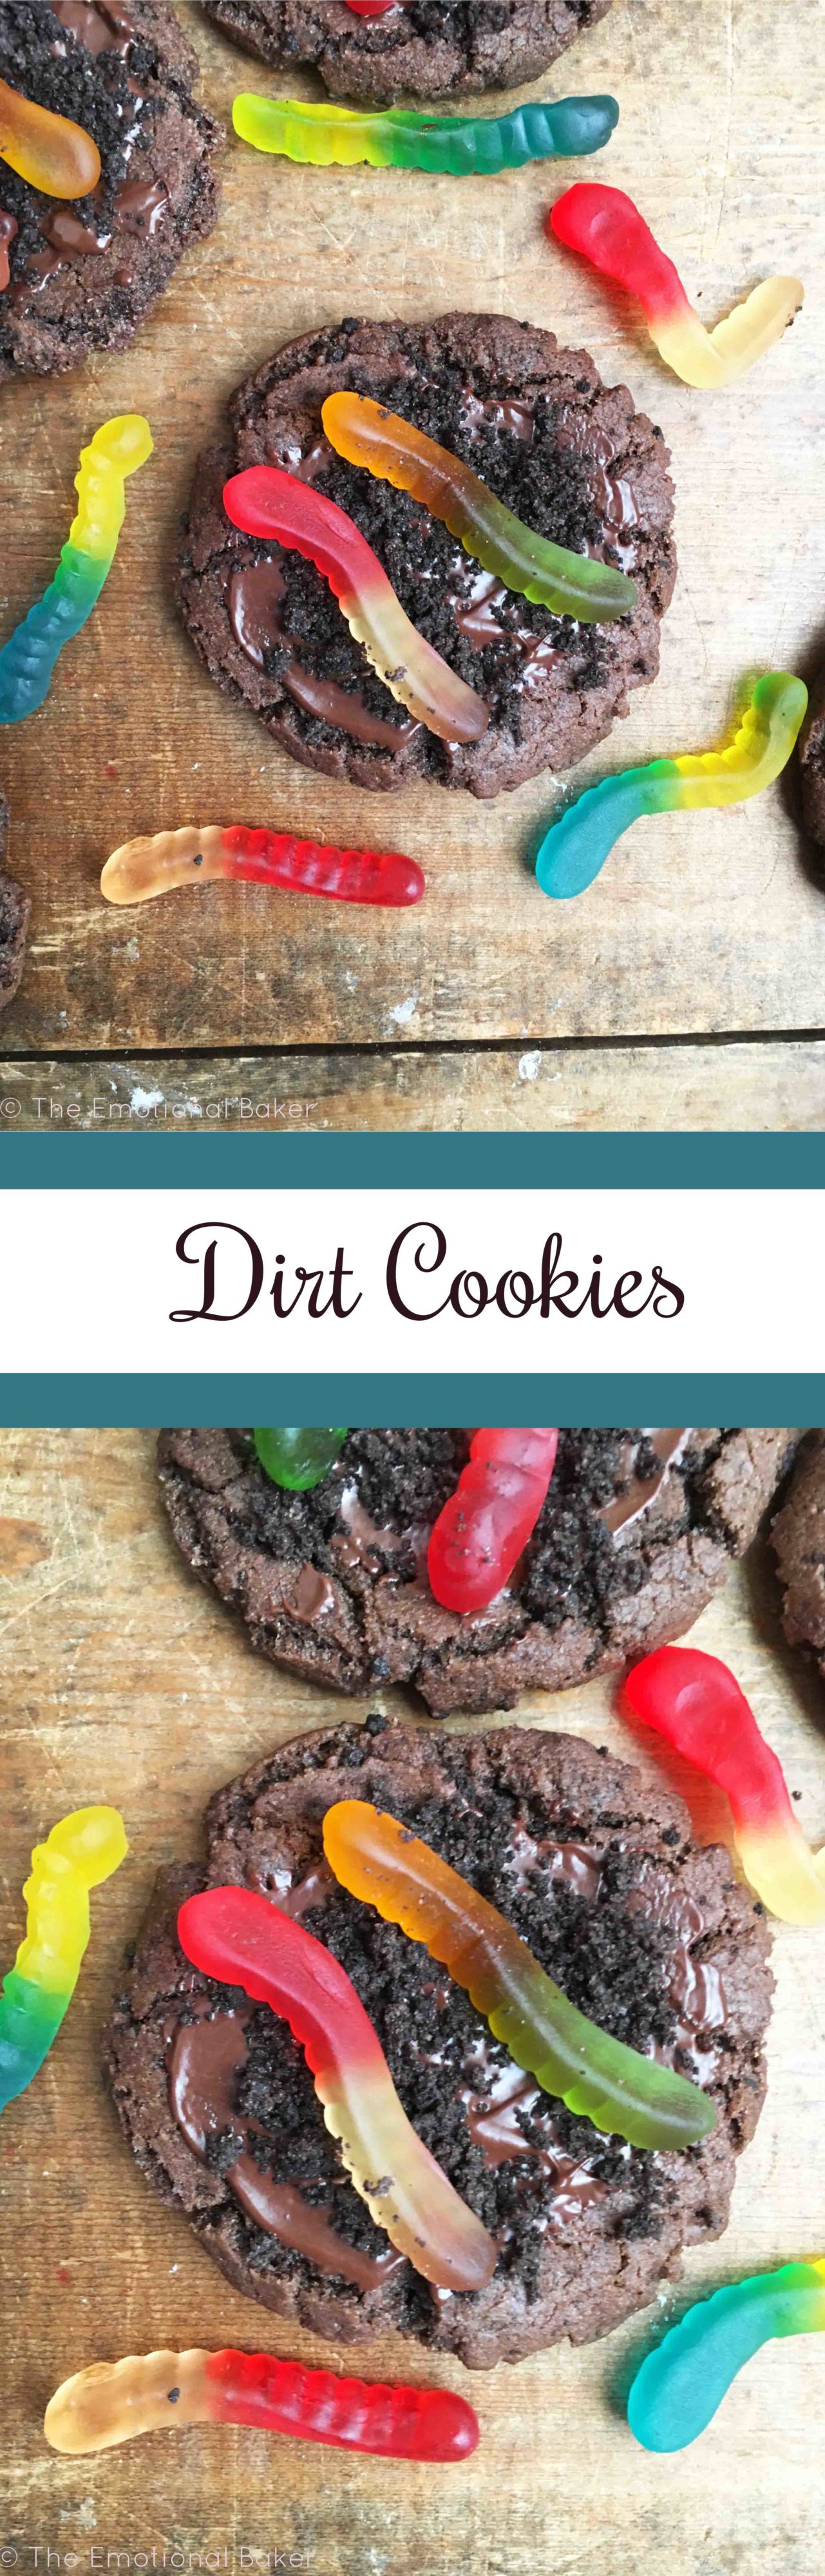 Dirt Cookies